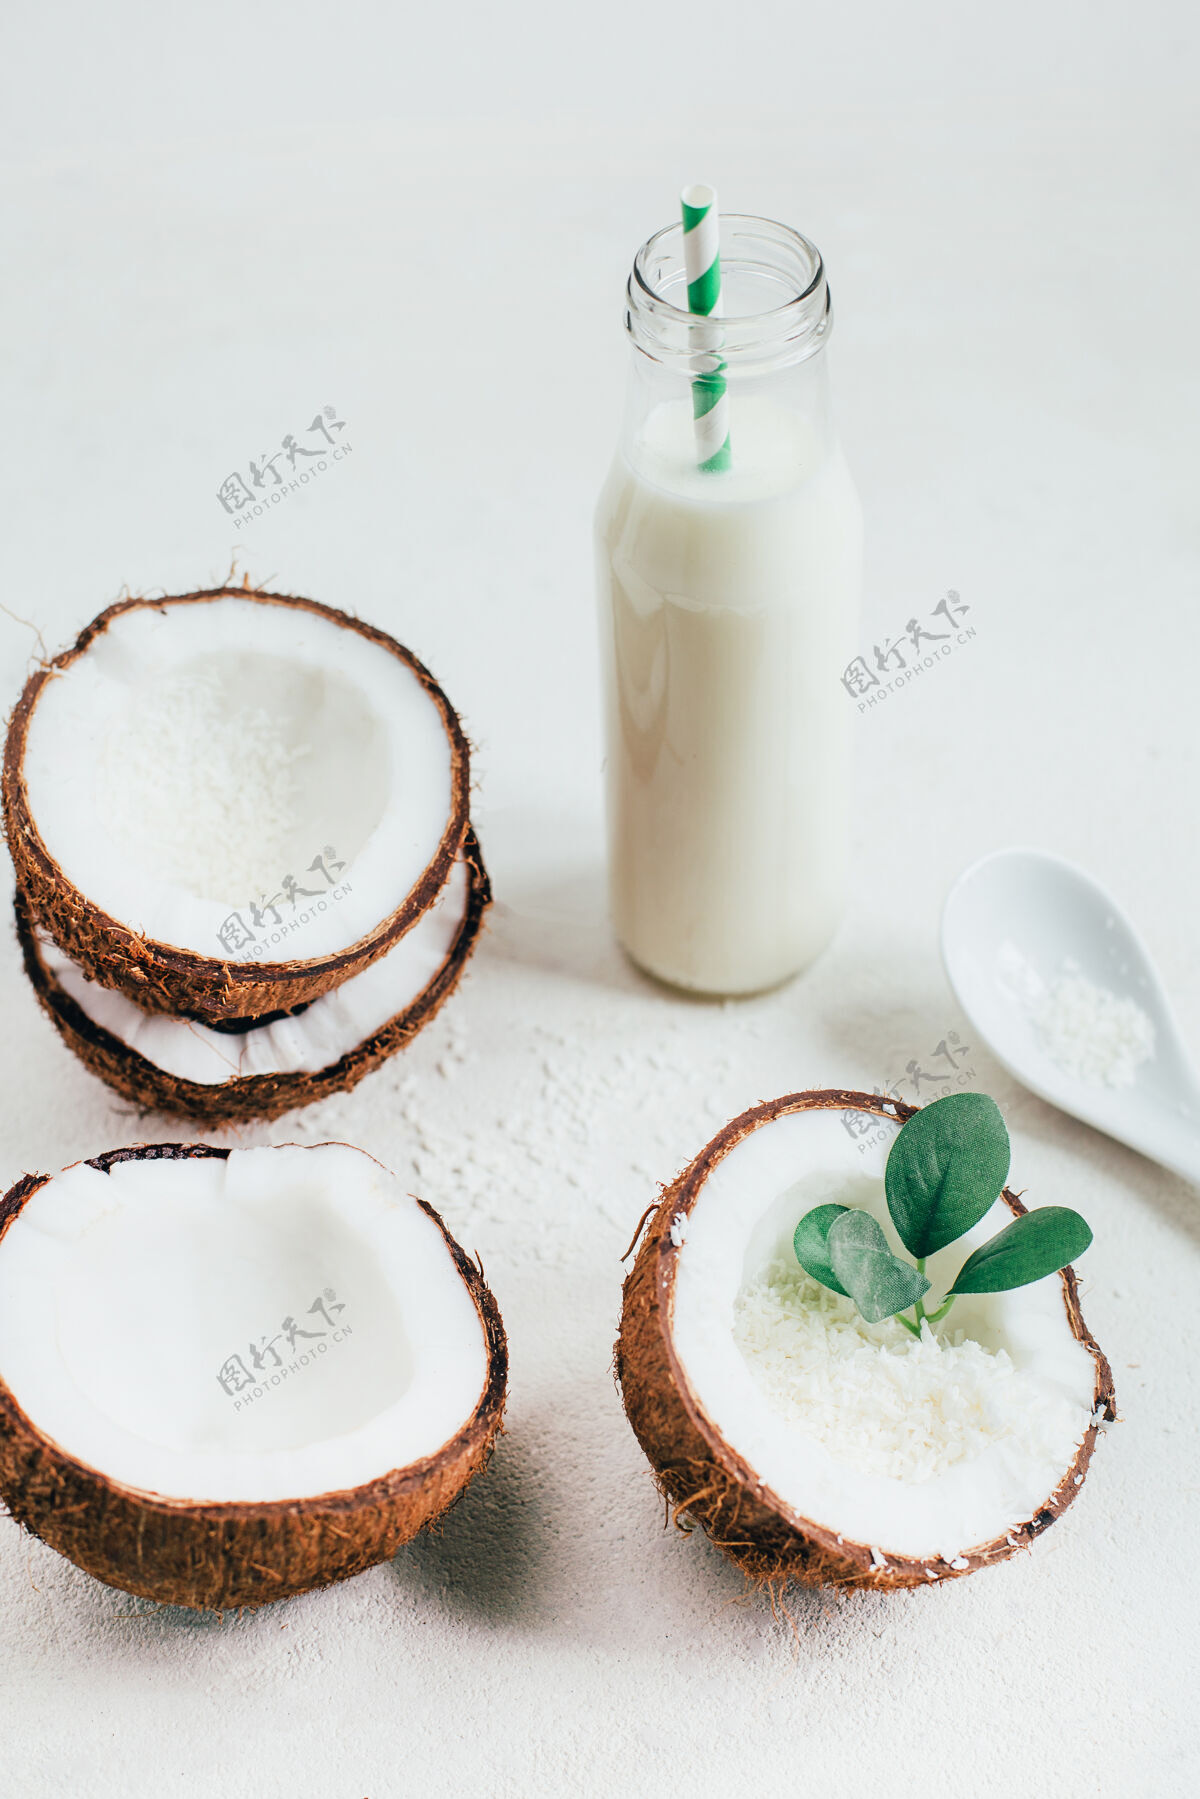 稻草椰子和椰子奶装在一个白色背景的瓶子里饮料叶子桌子